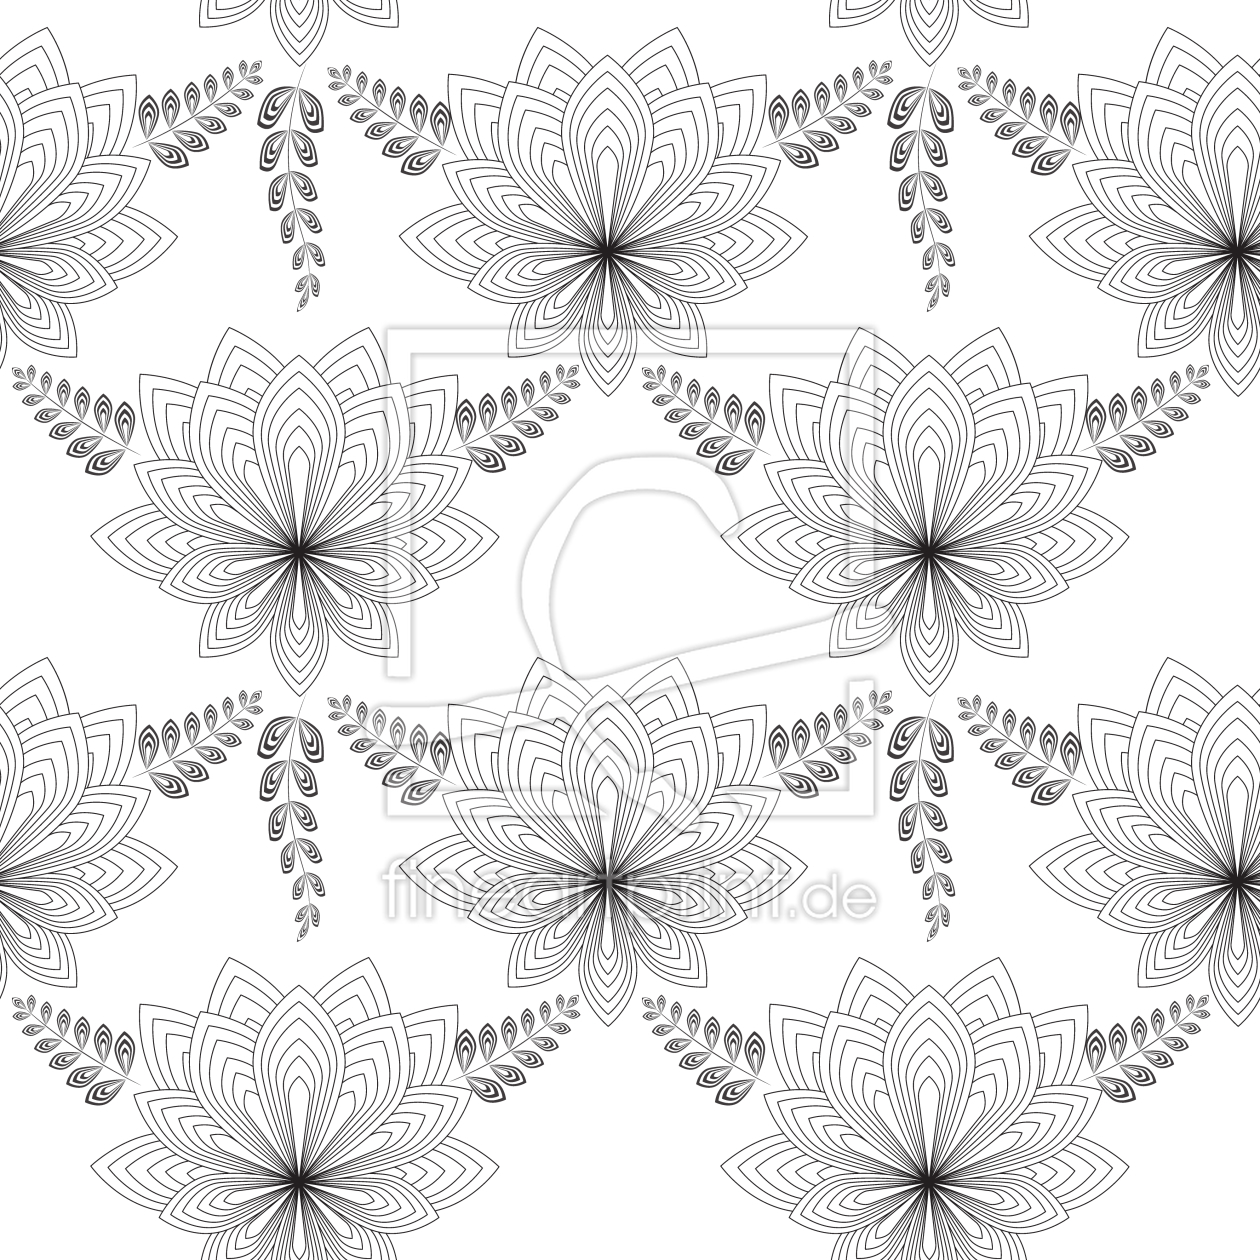 Bild-Nr.: 9007891 Art Deco Blume erstellt von patterndesigns-com